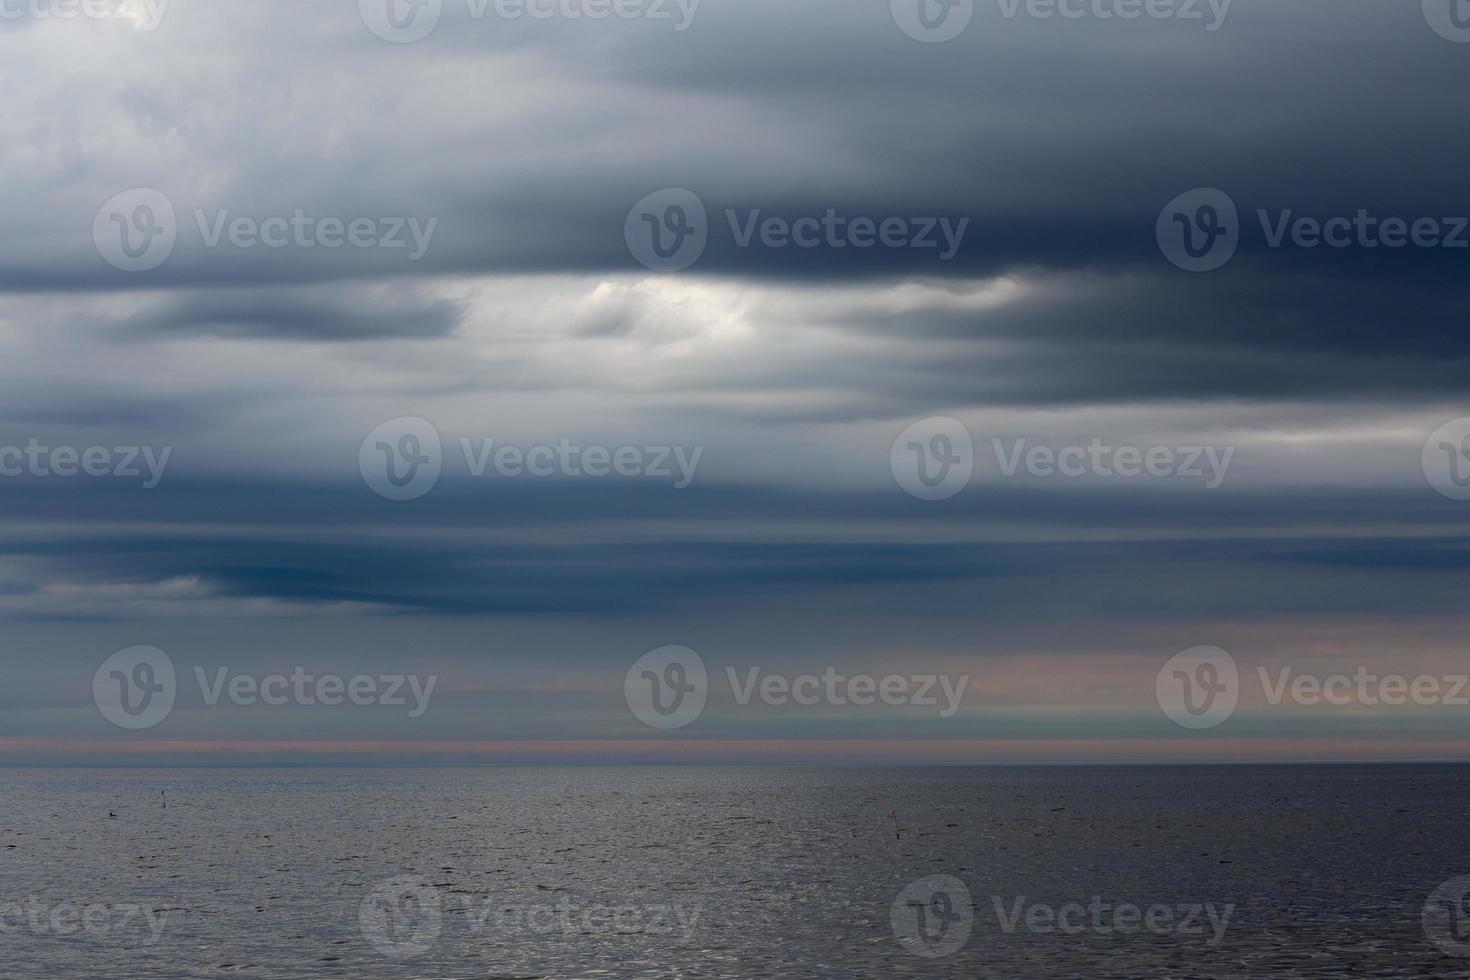 Baltisch zee kust Bij zonsondergang foto